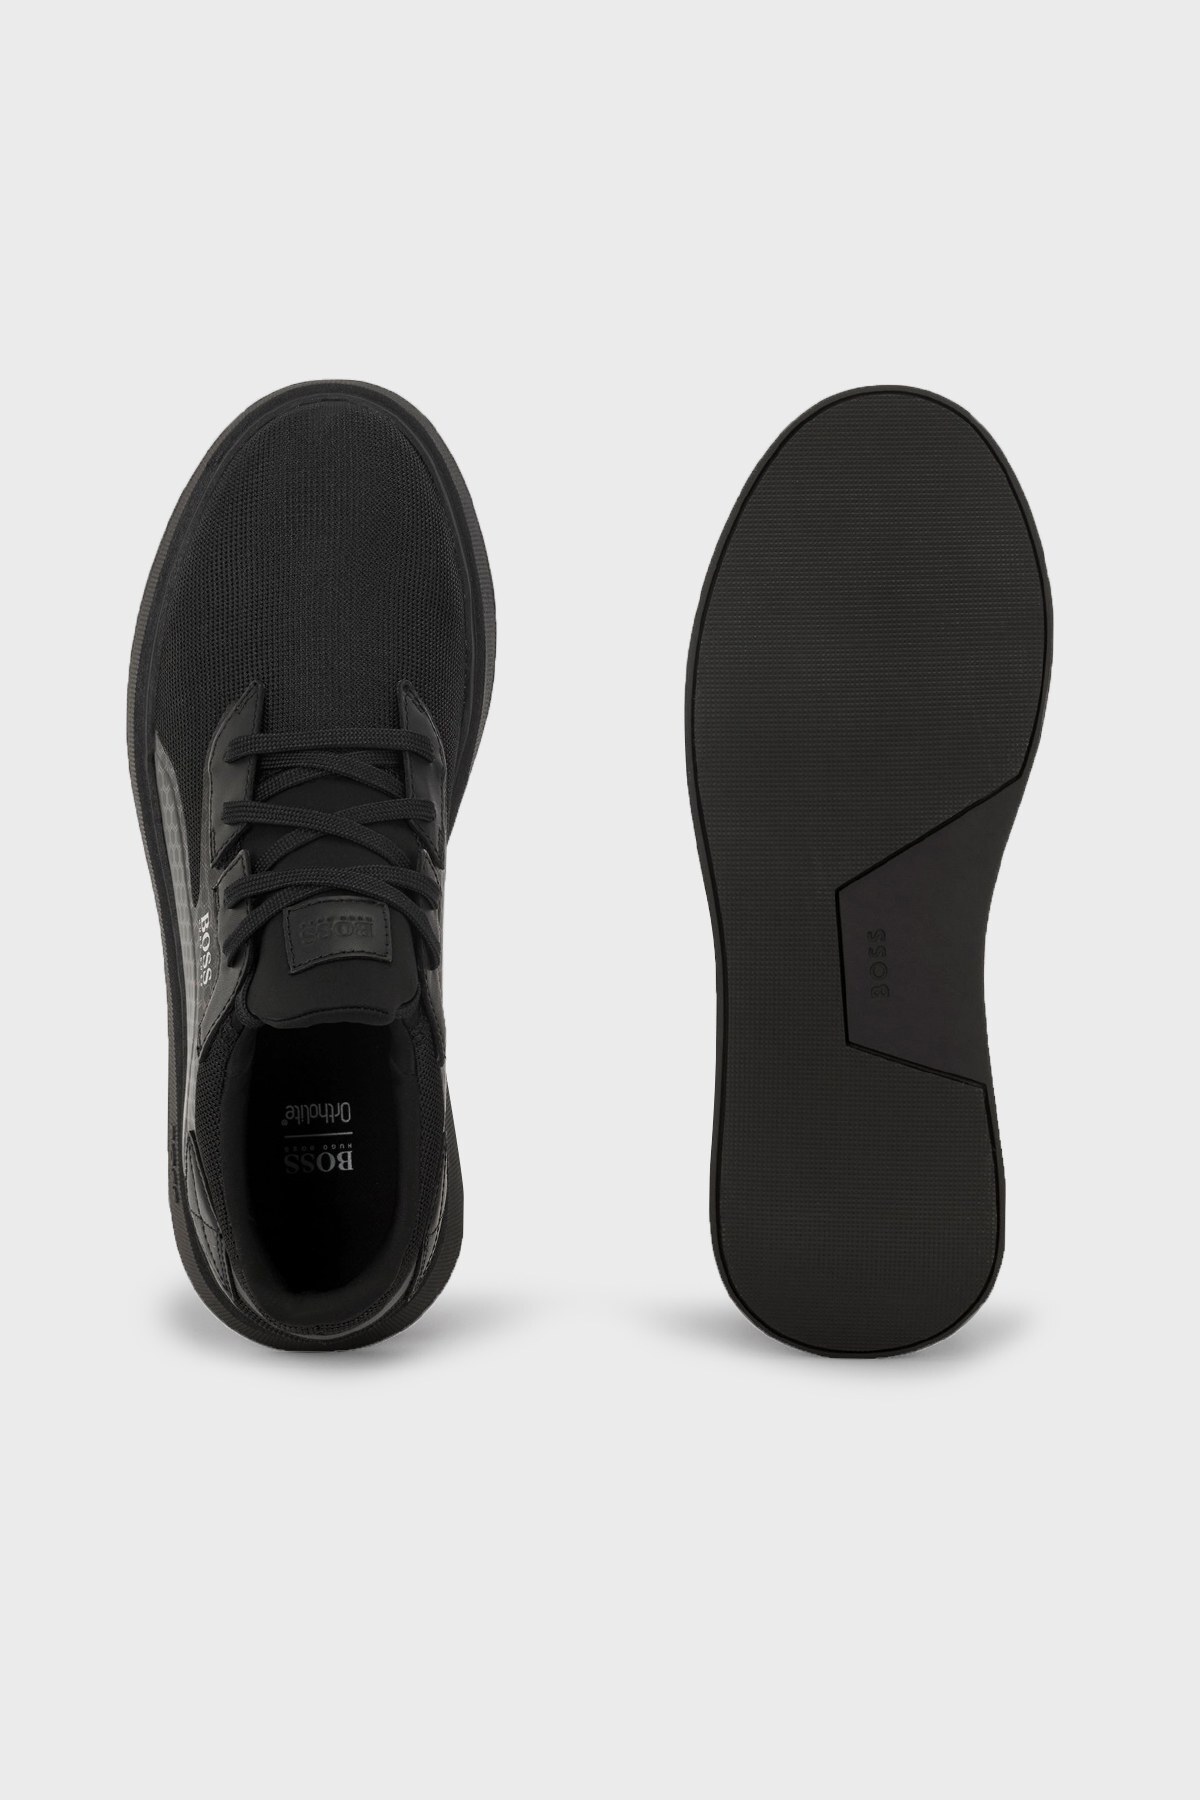 Hugo Boss Logolu Bağcıklı Sneaker Erkek Ayakkabı 50465330 001 SİYAH